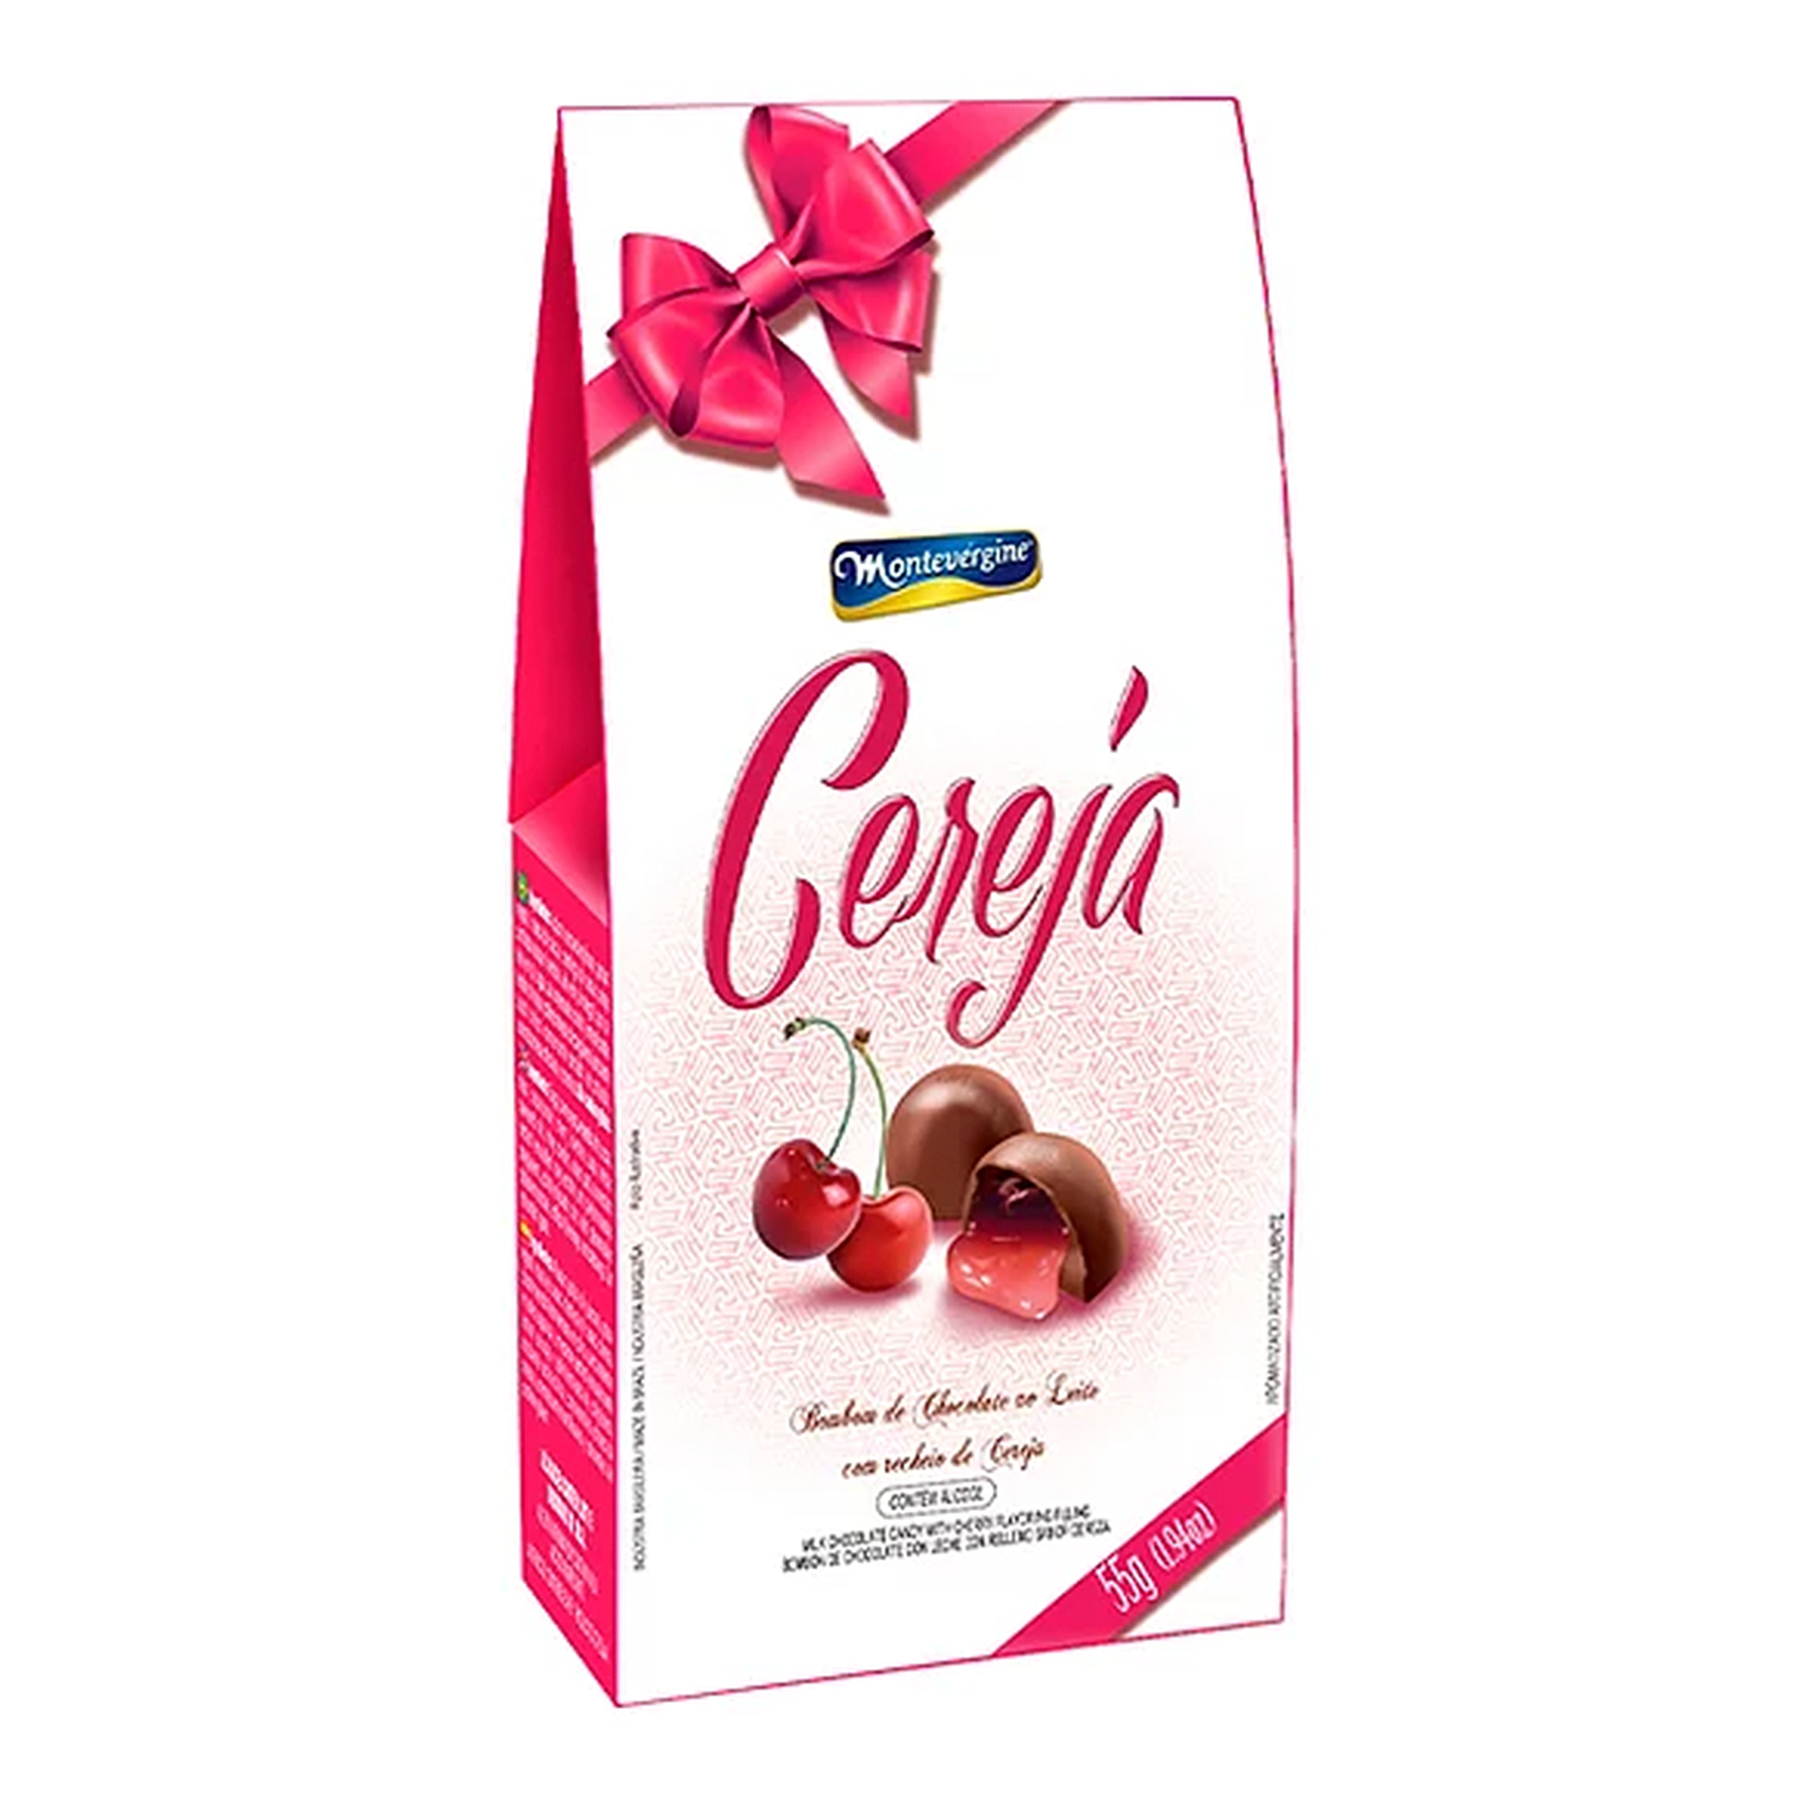 Bombom de Chocolate ao Leite Cereja Montevérgine 55g